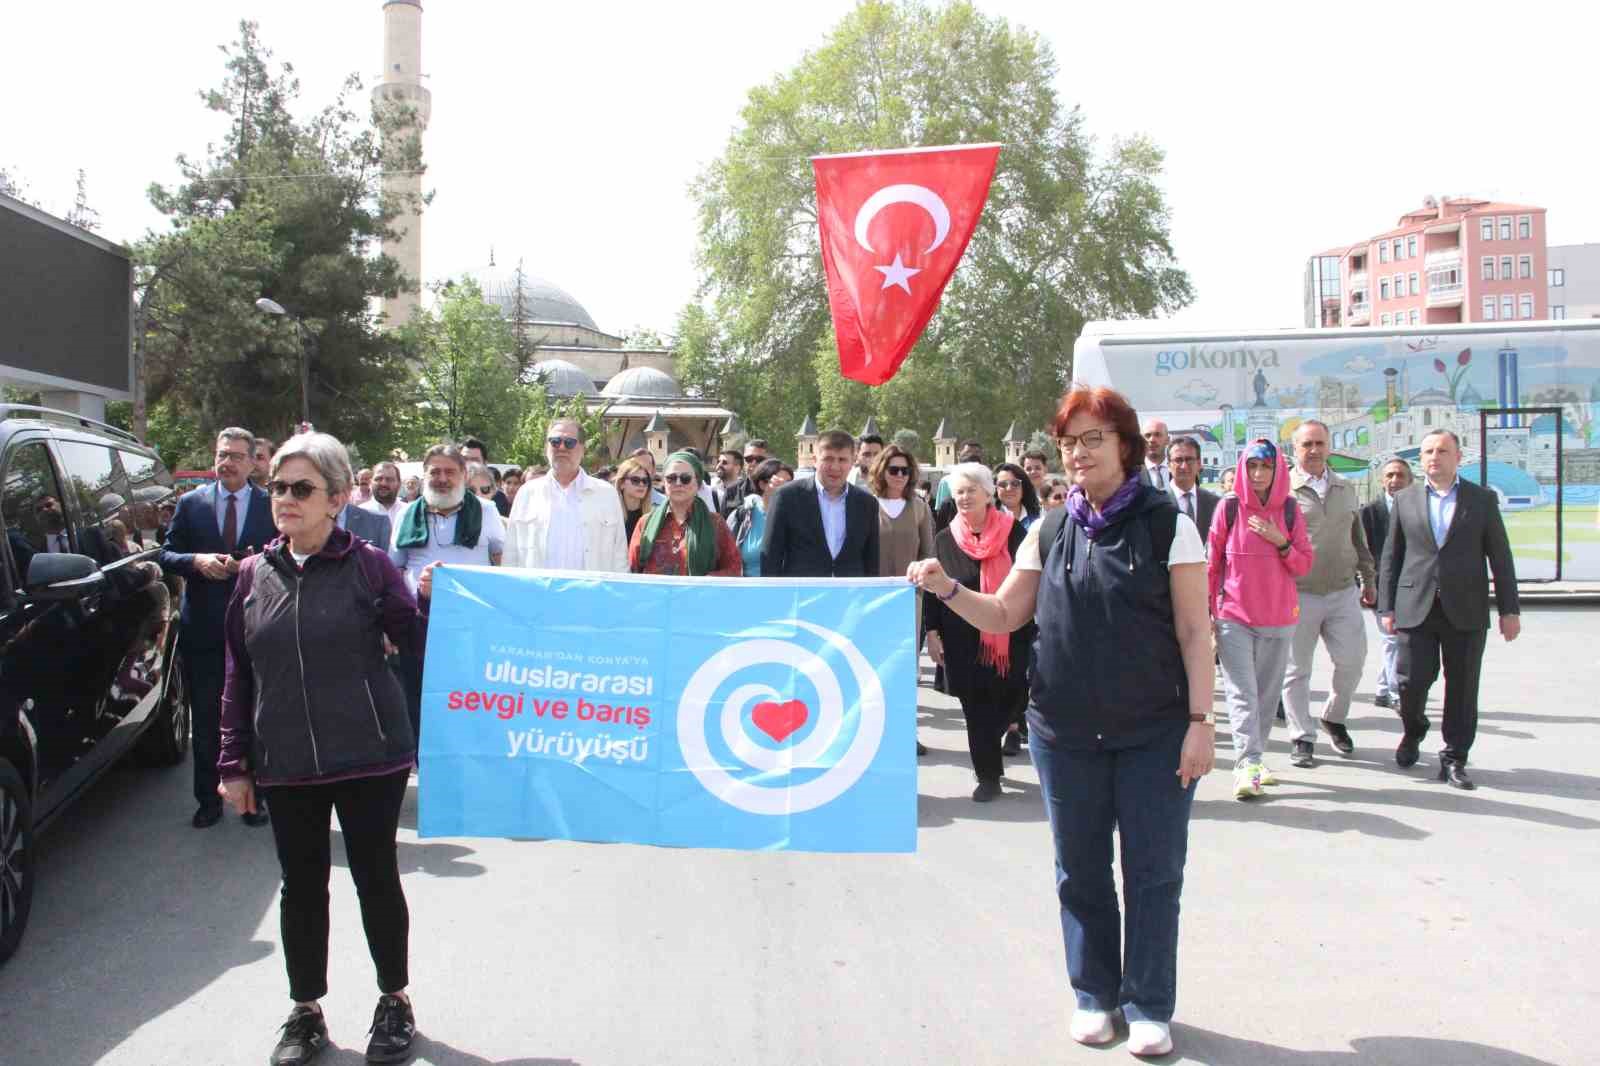 Hazreti Mevlana için Karaman’dan Konya’ya Sevgi ve Barış Yürüyüşü düzenlendi
